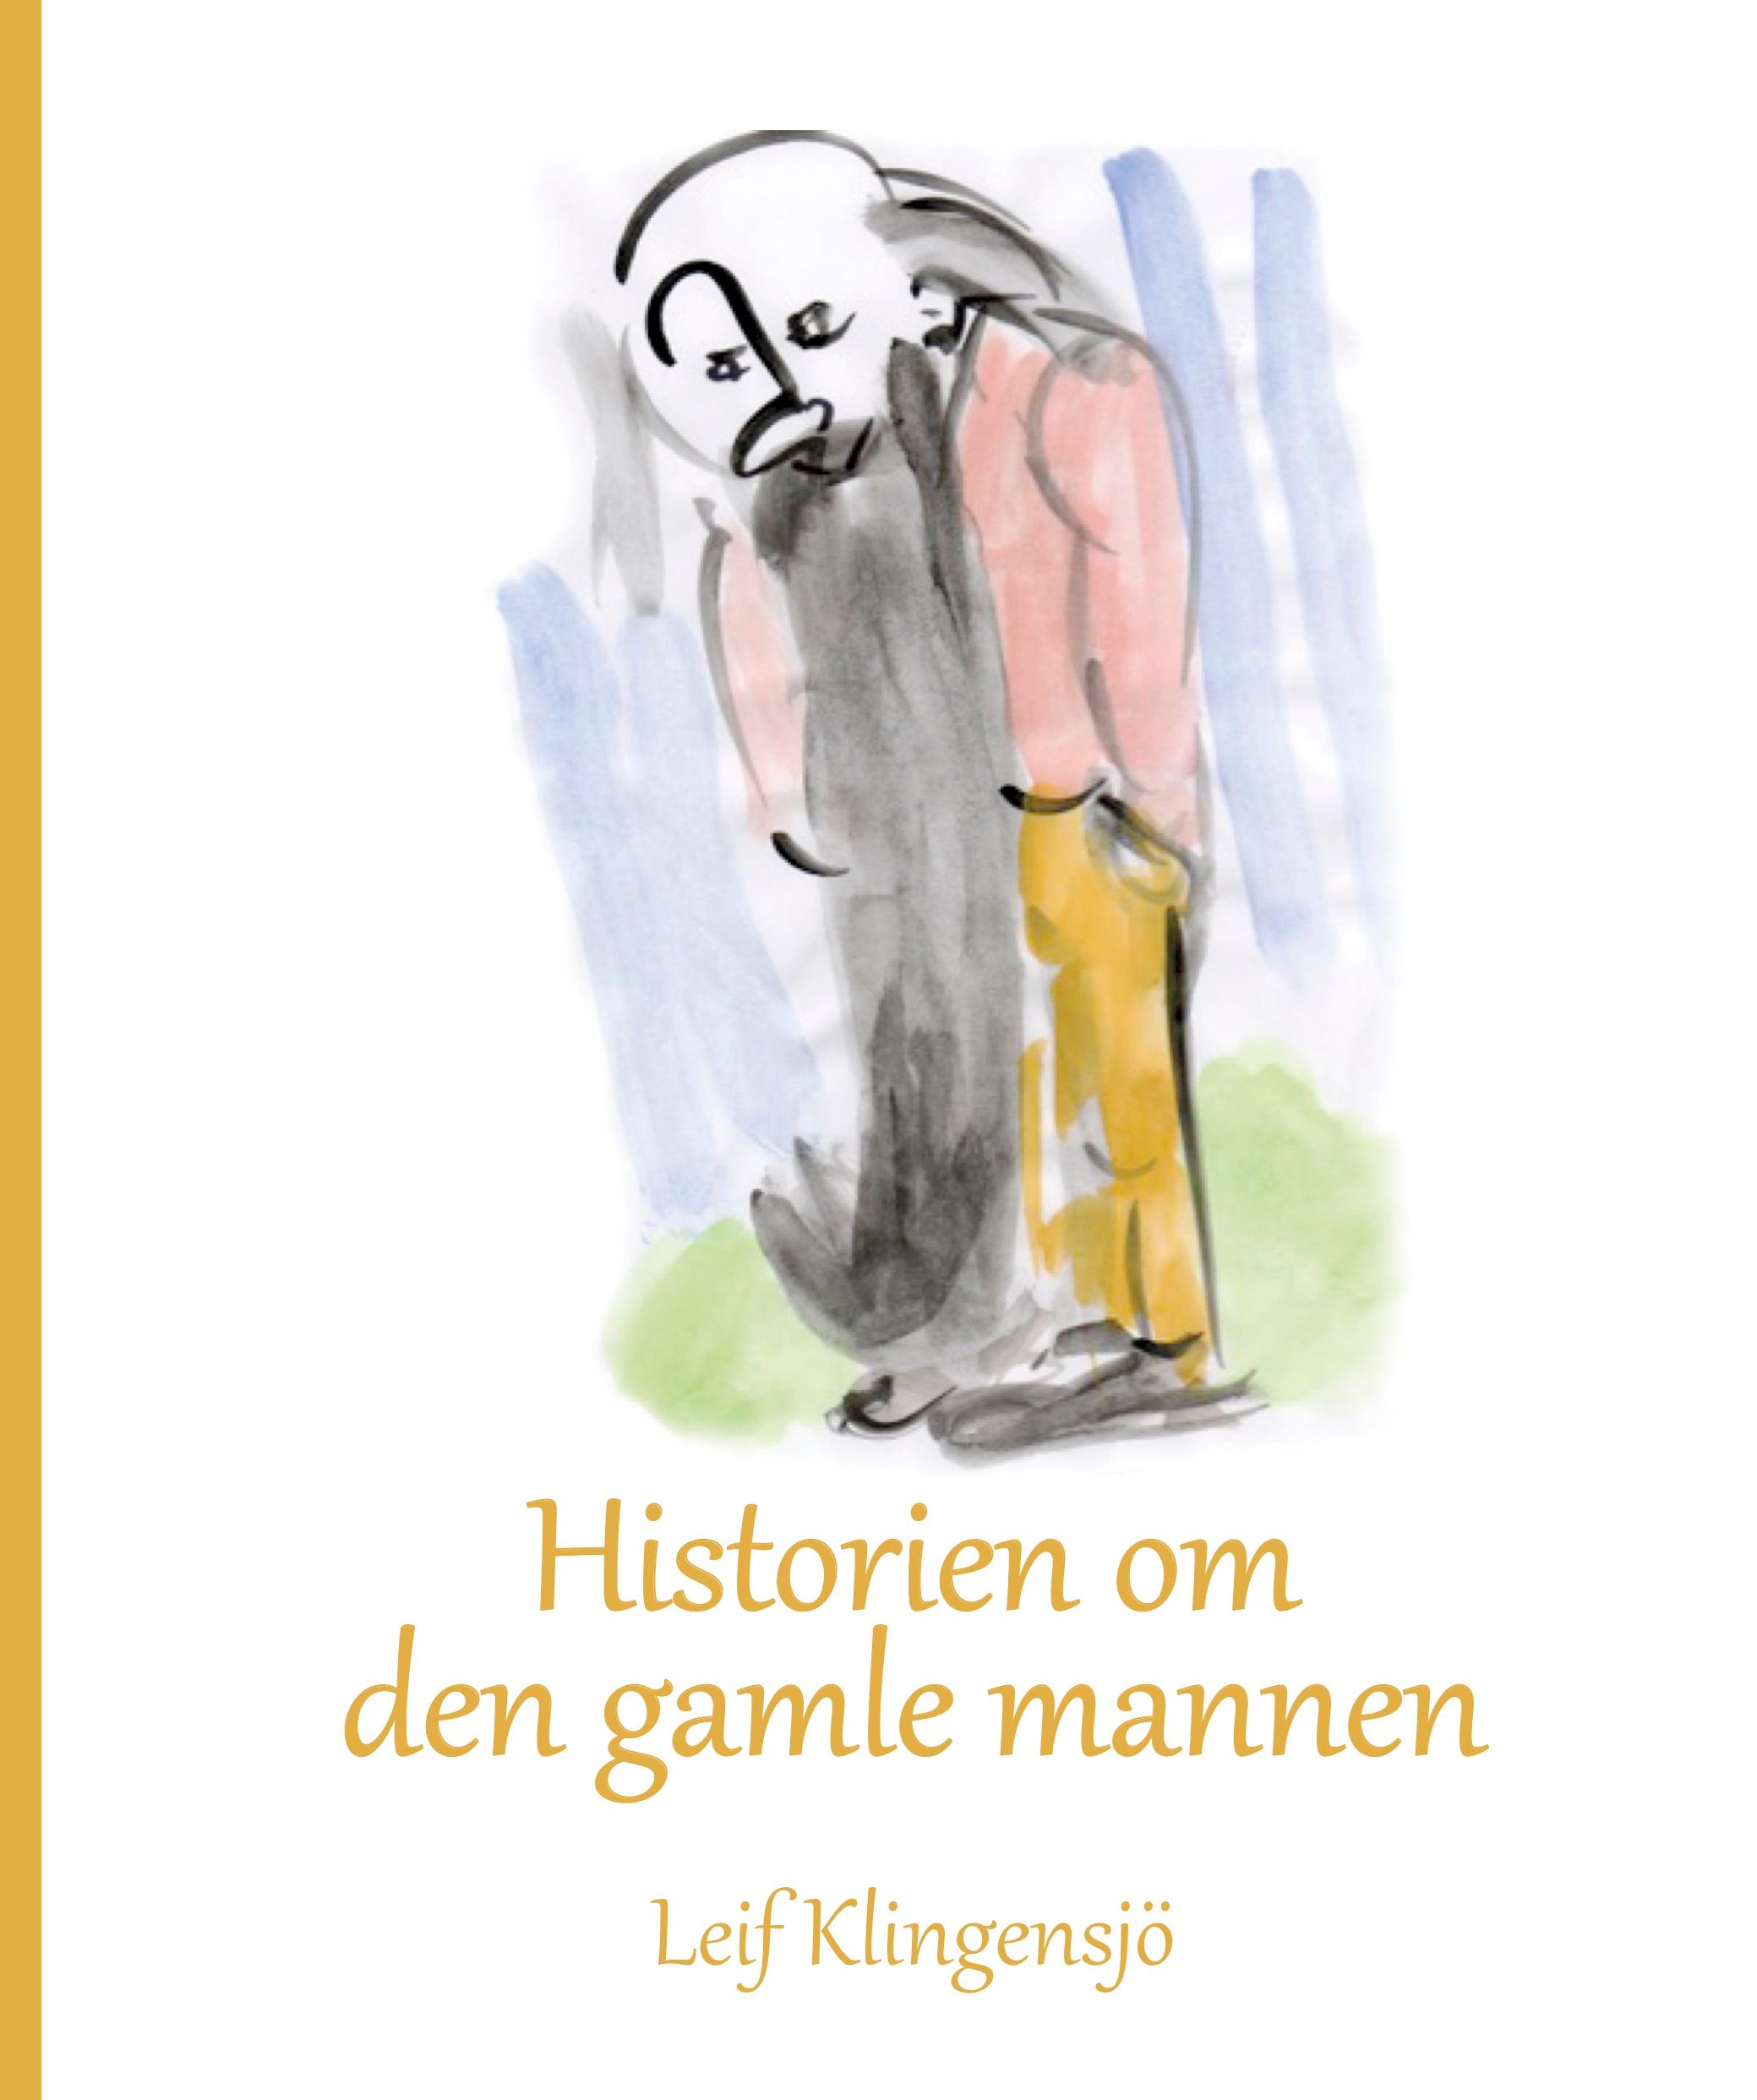 Historien om den gamle mannen, e-bog af Leif Klingensjö